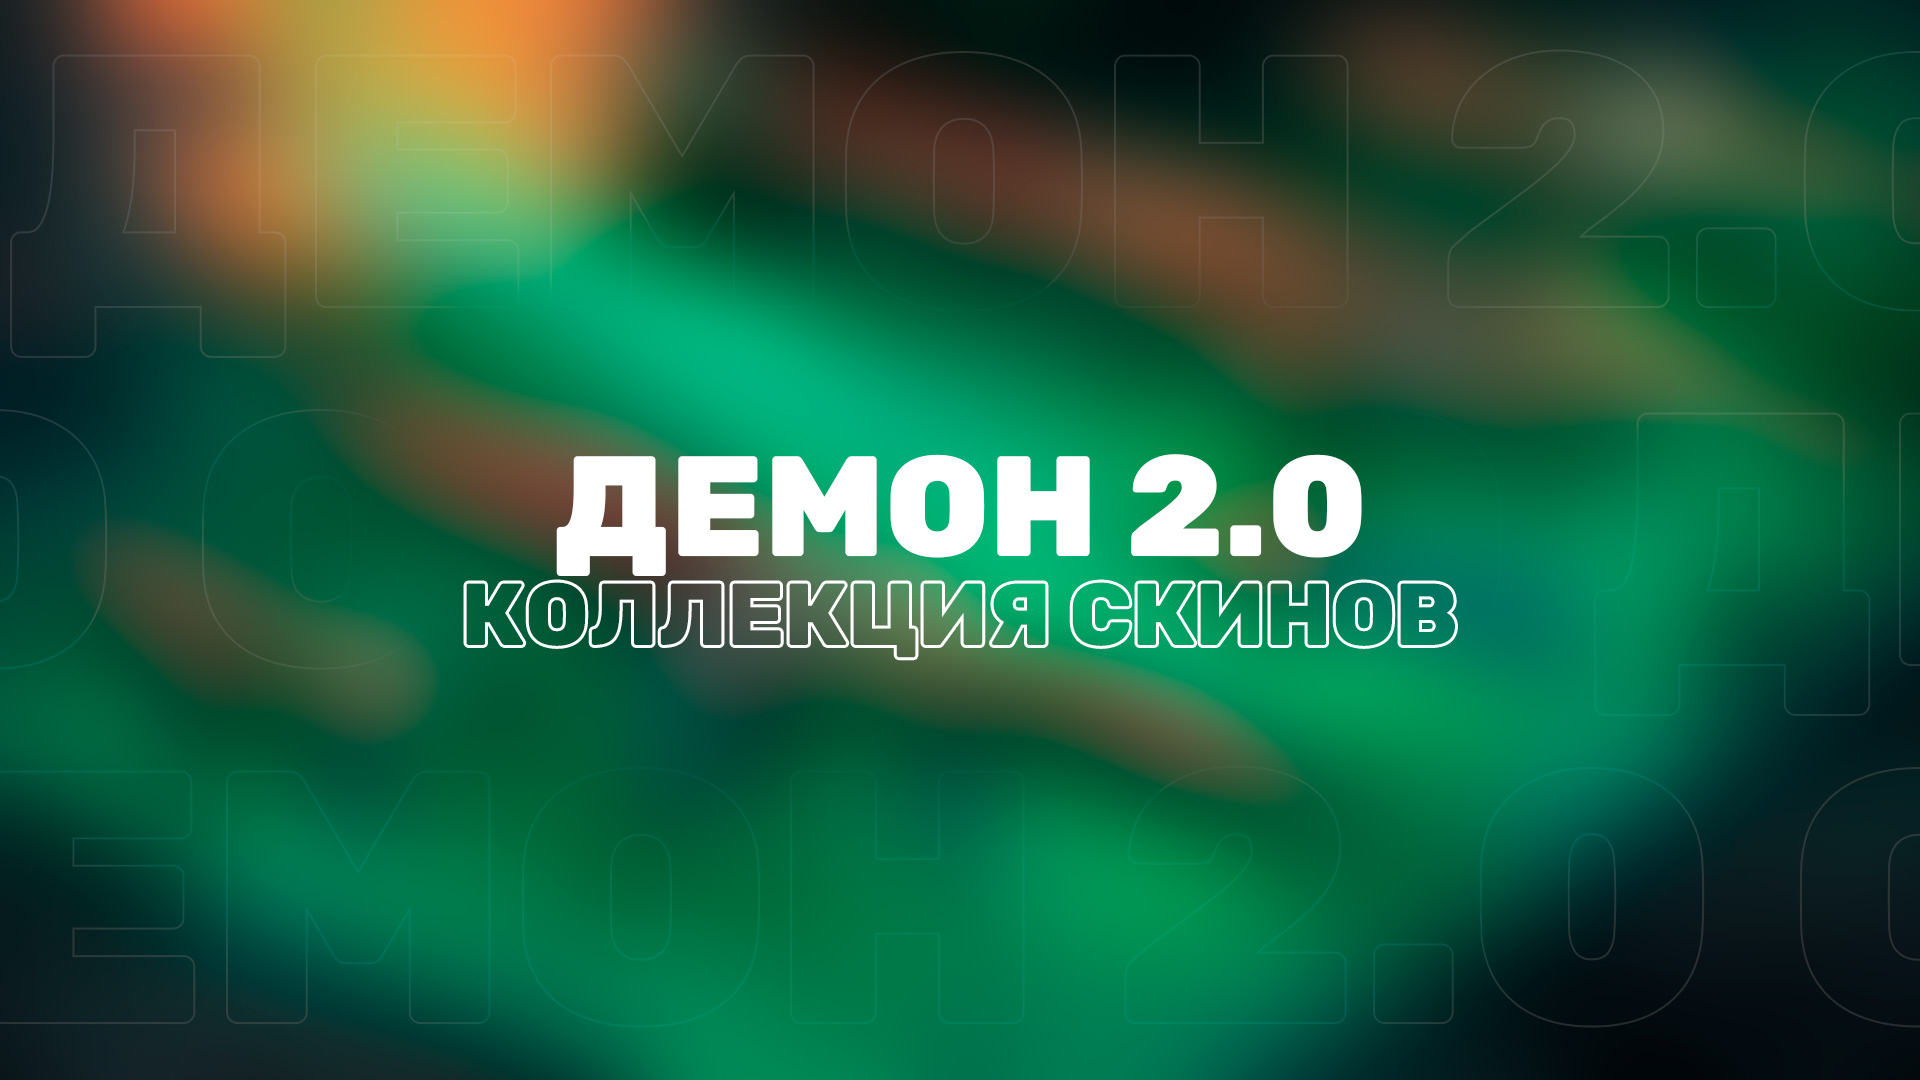 В Valorant появилась вторая версия довольно старой и популярной коллекции скинов — «Демон 2.0» (Oni 2.0).